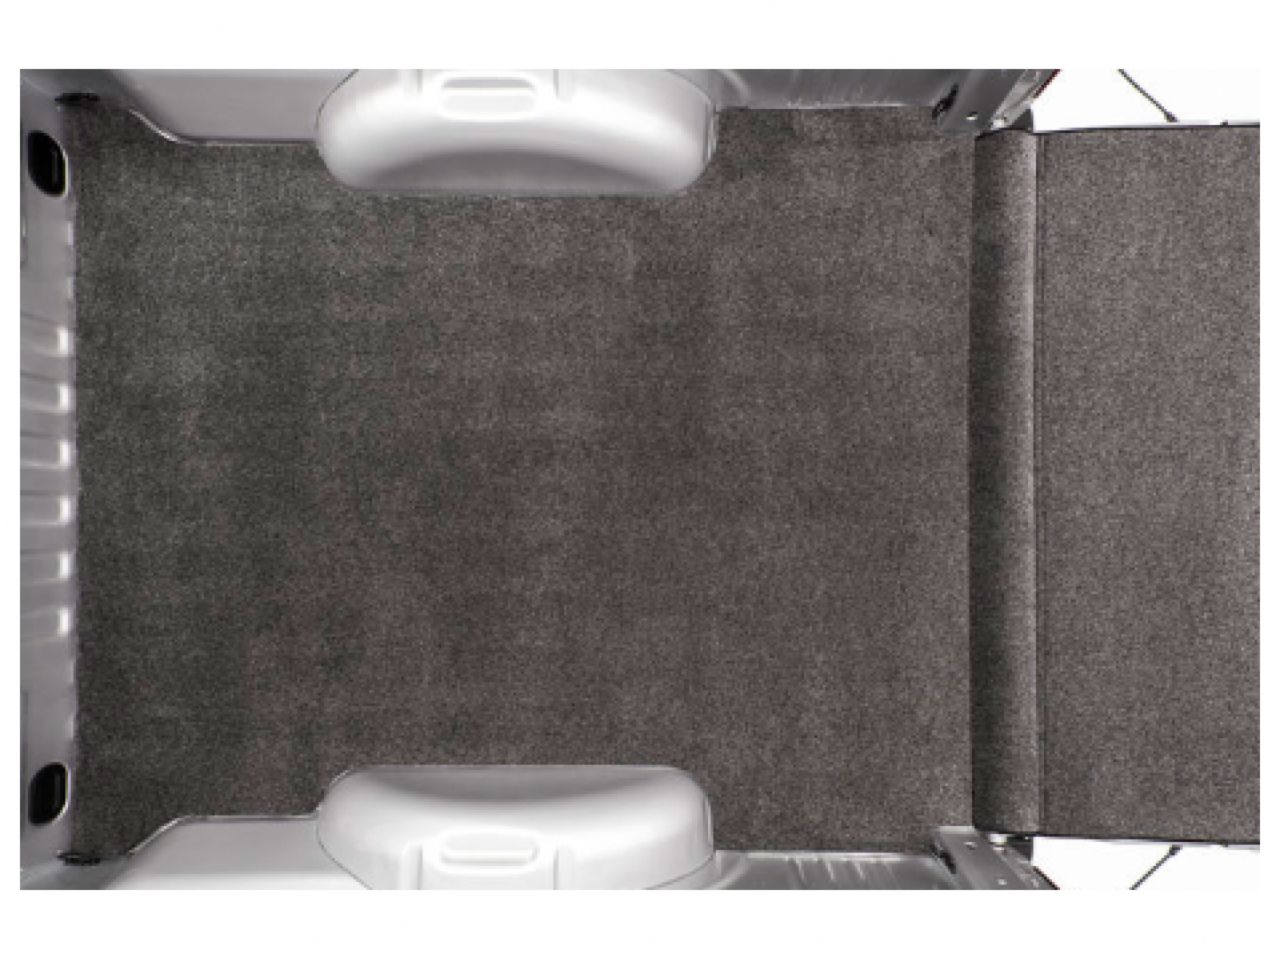 Bedrug XLT Bedmat For Spray-In or No Bed Liner 19+ Ford Ranger 6' Bed